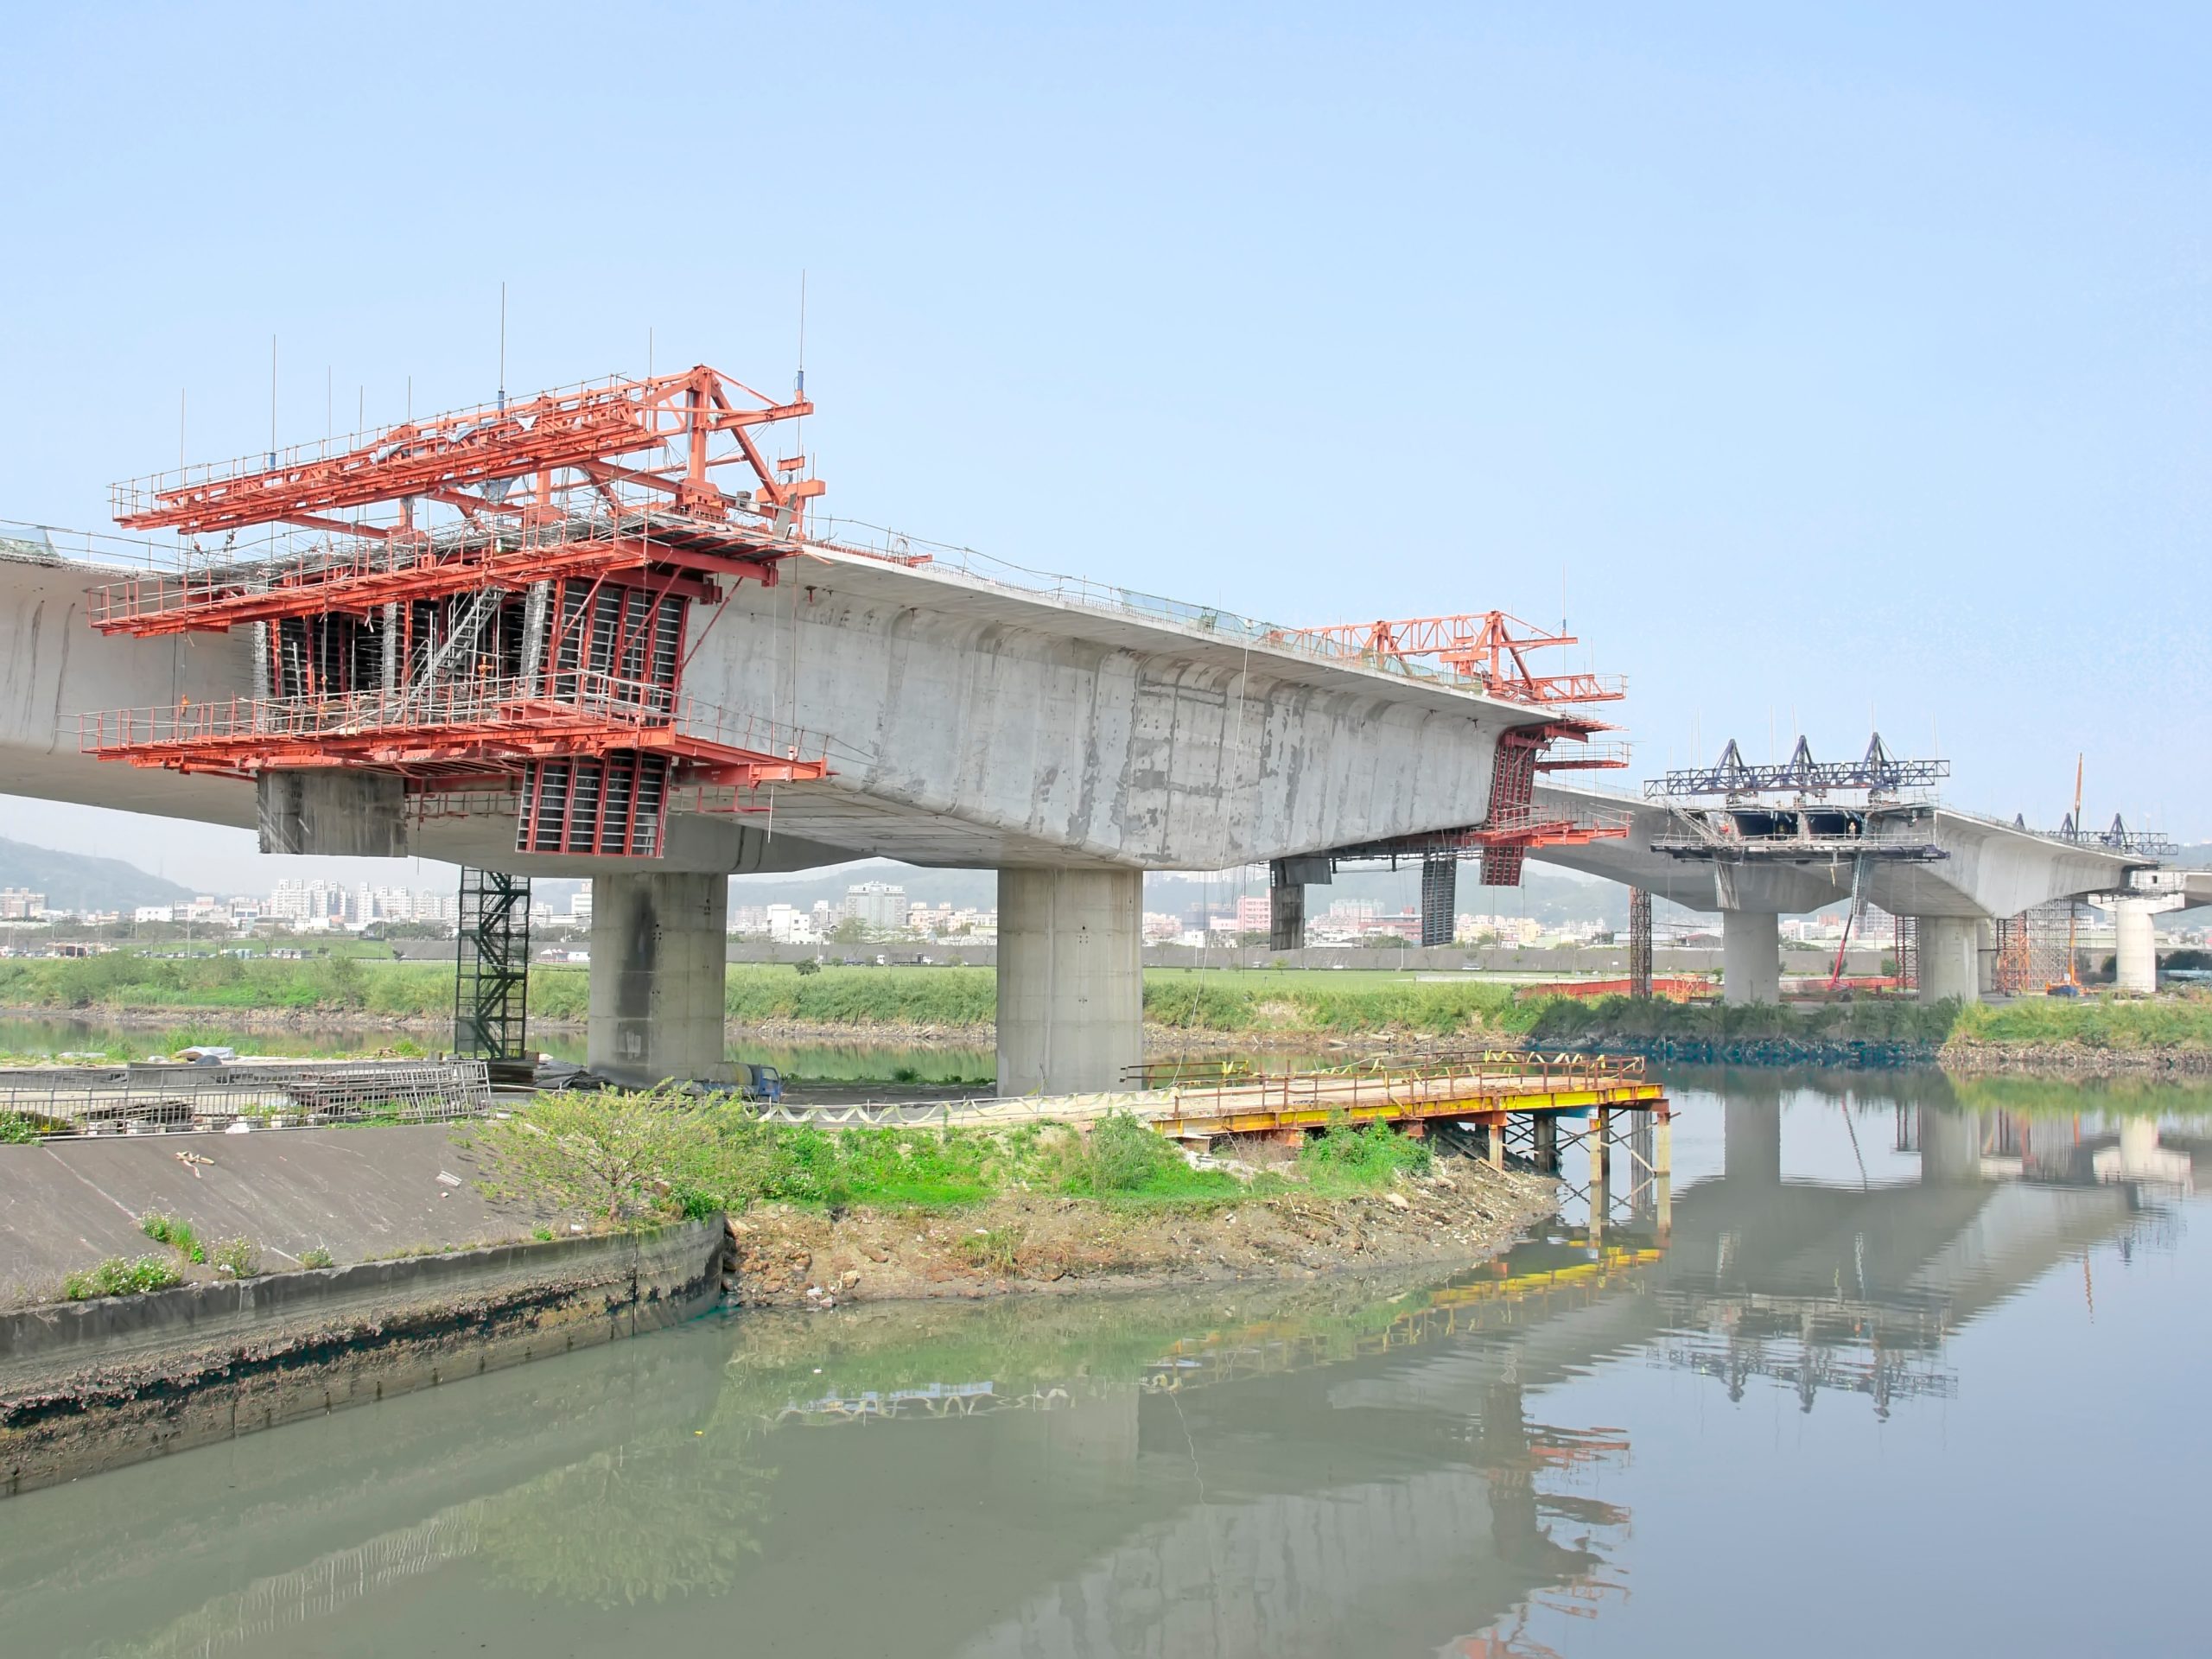 Analiza i projektowanie mostu z wykorzystaniem metody wspornikowej